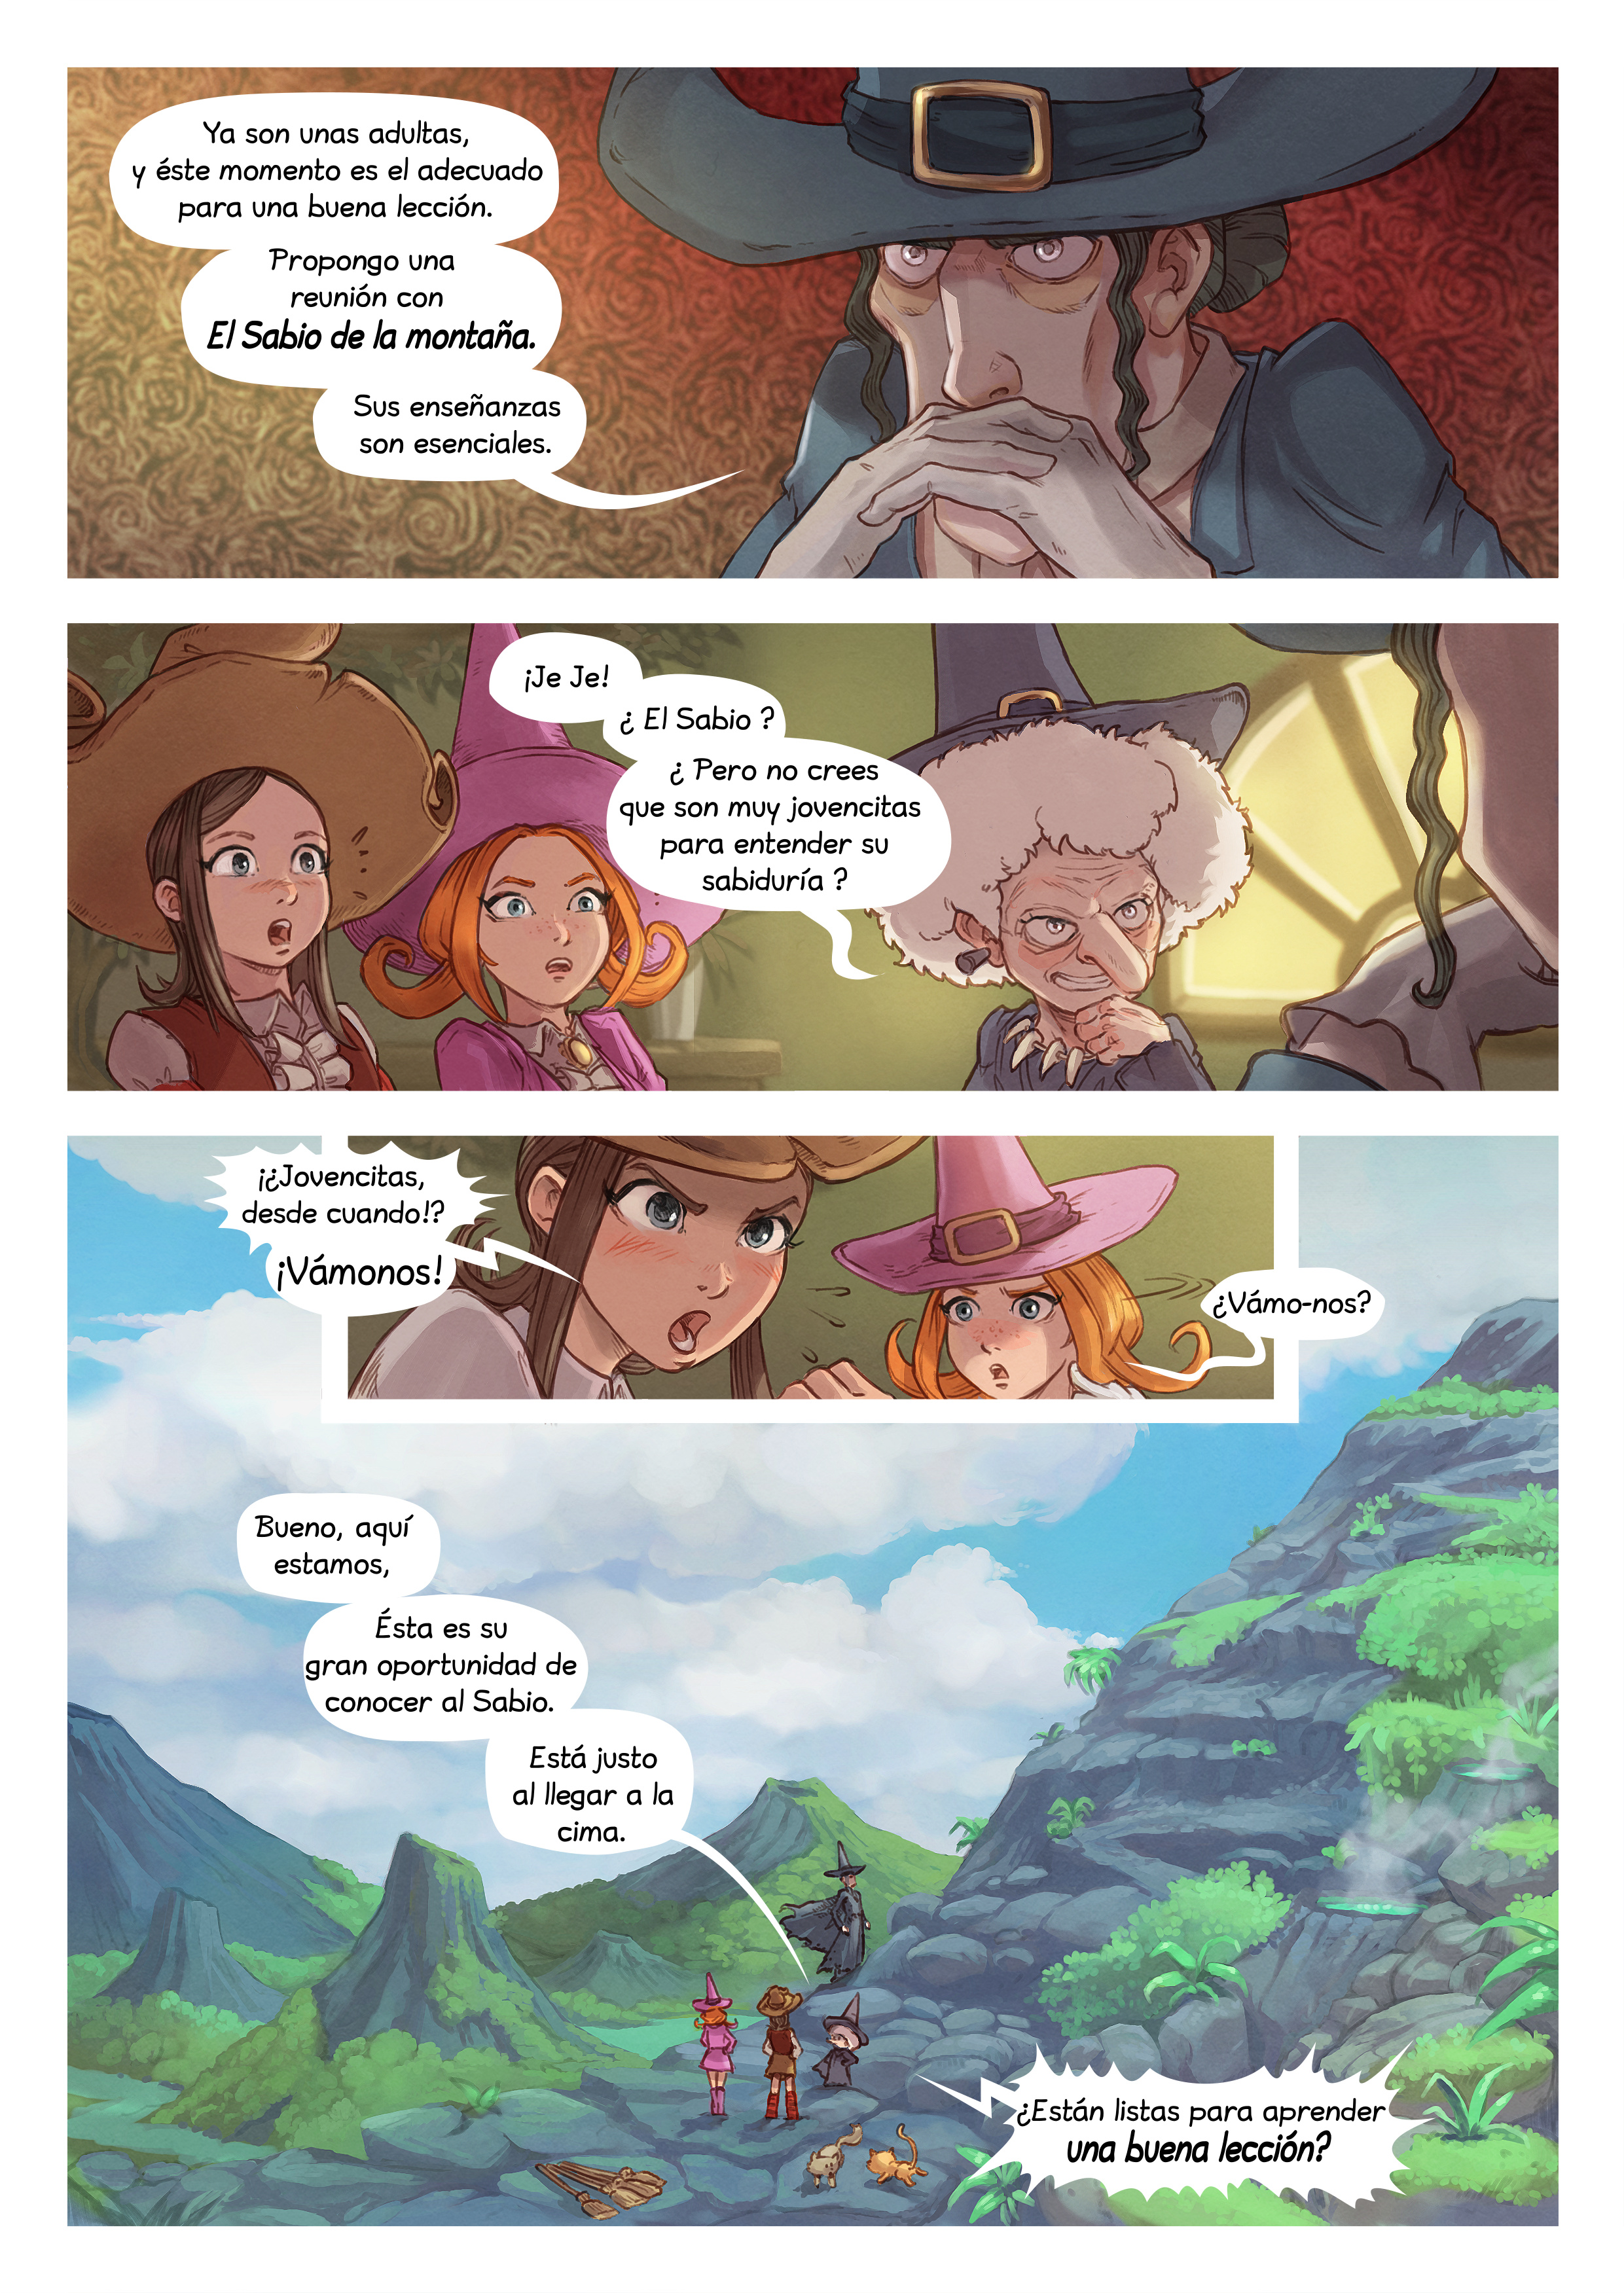 Episodio 16 : El Sabio de la Montaña, Page 4